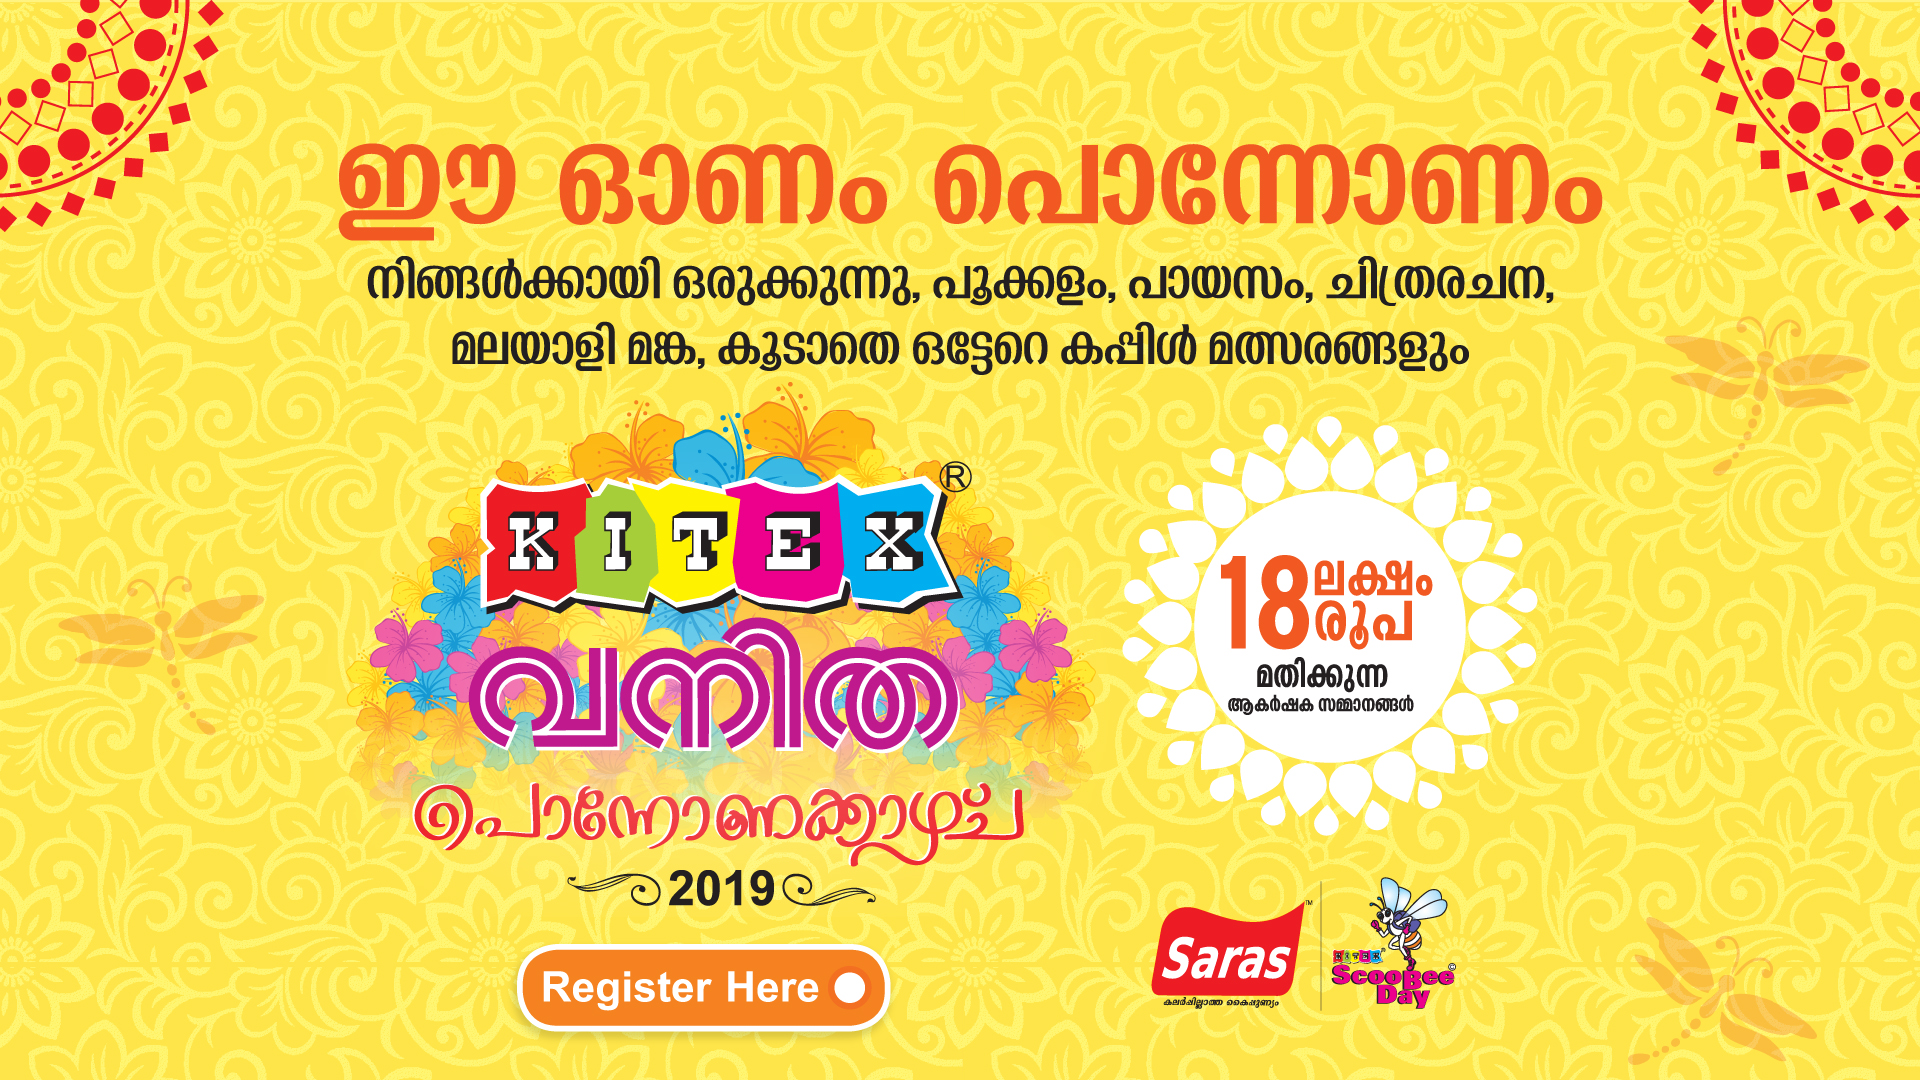 Kitex-Vanitha Ponnonakazhcha 2019, Kottayam, Kerala, India